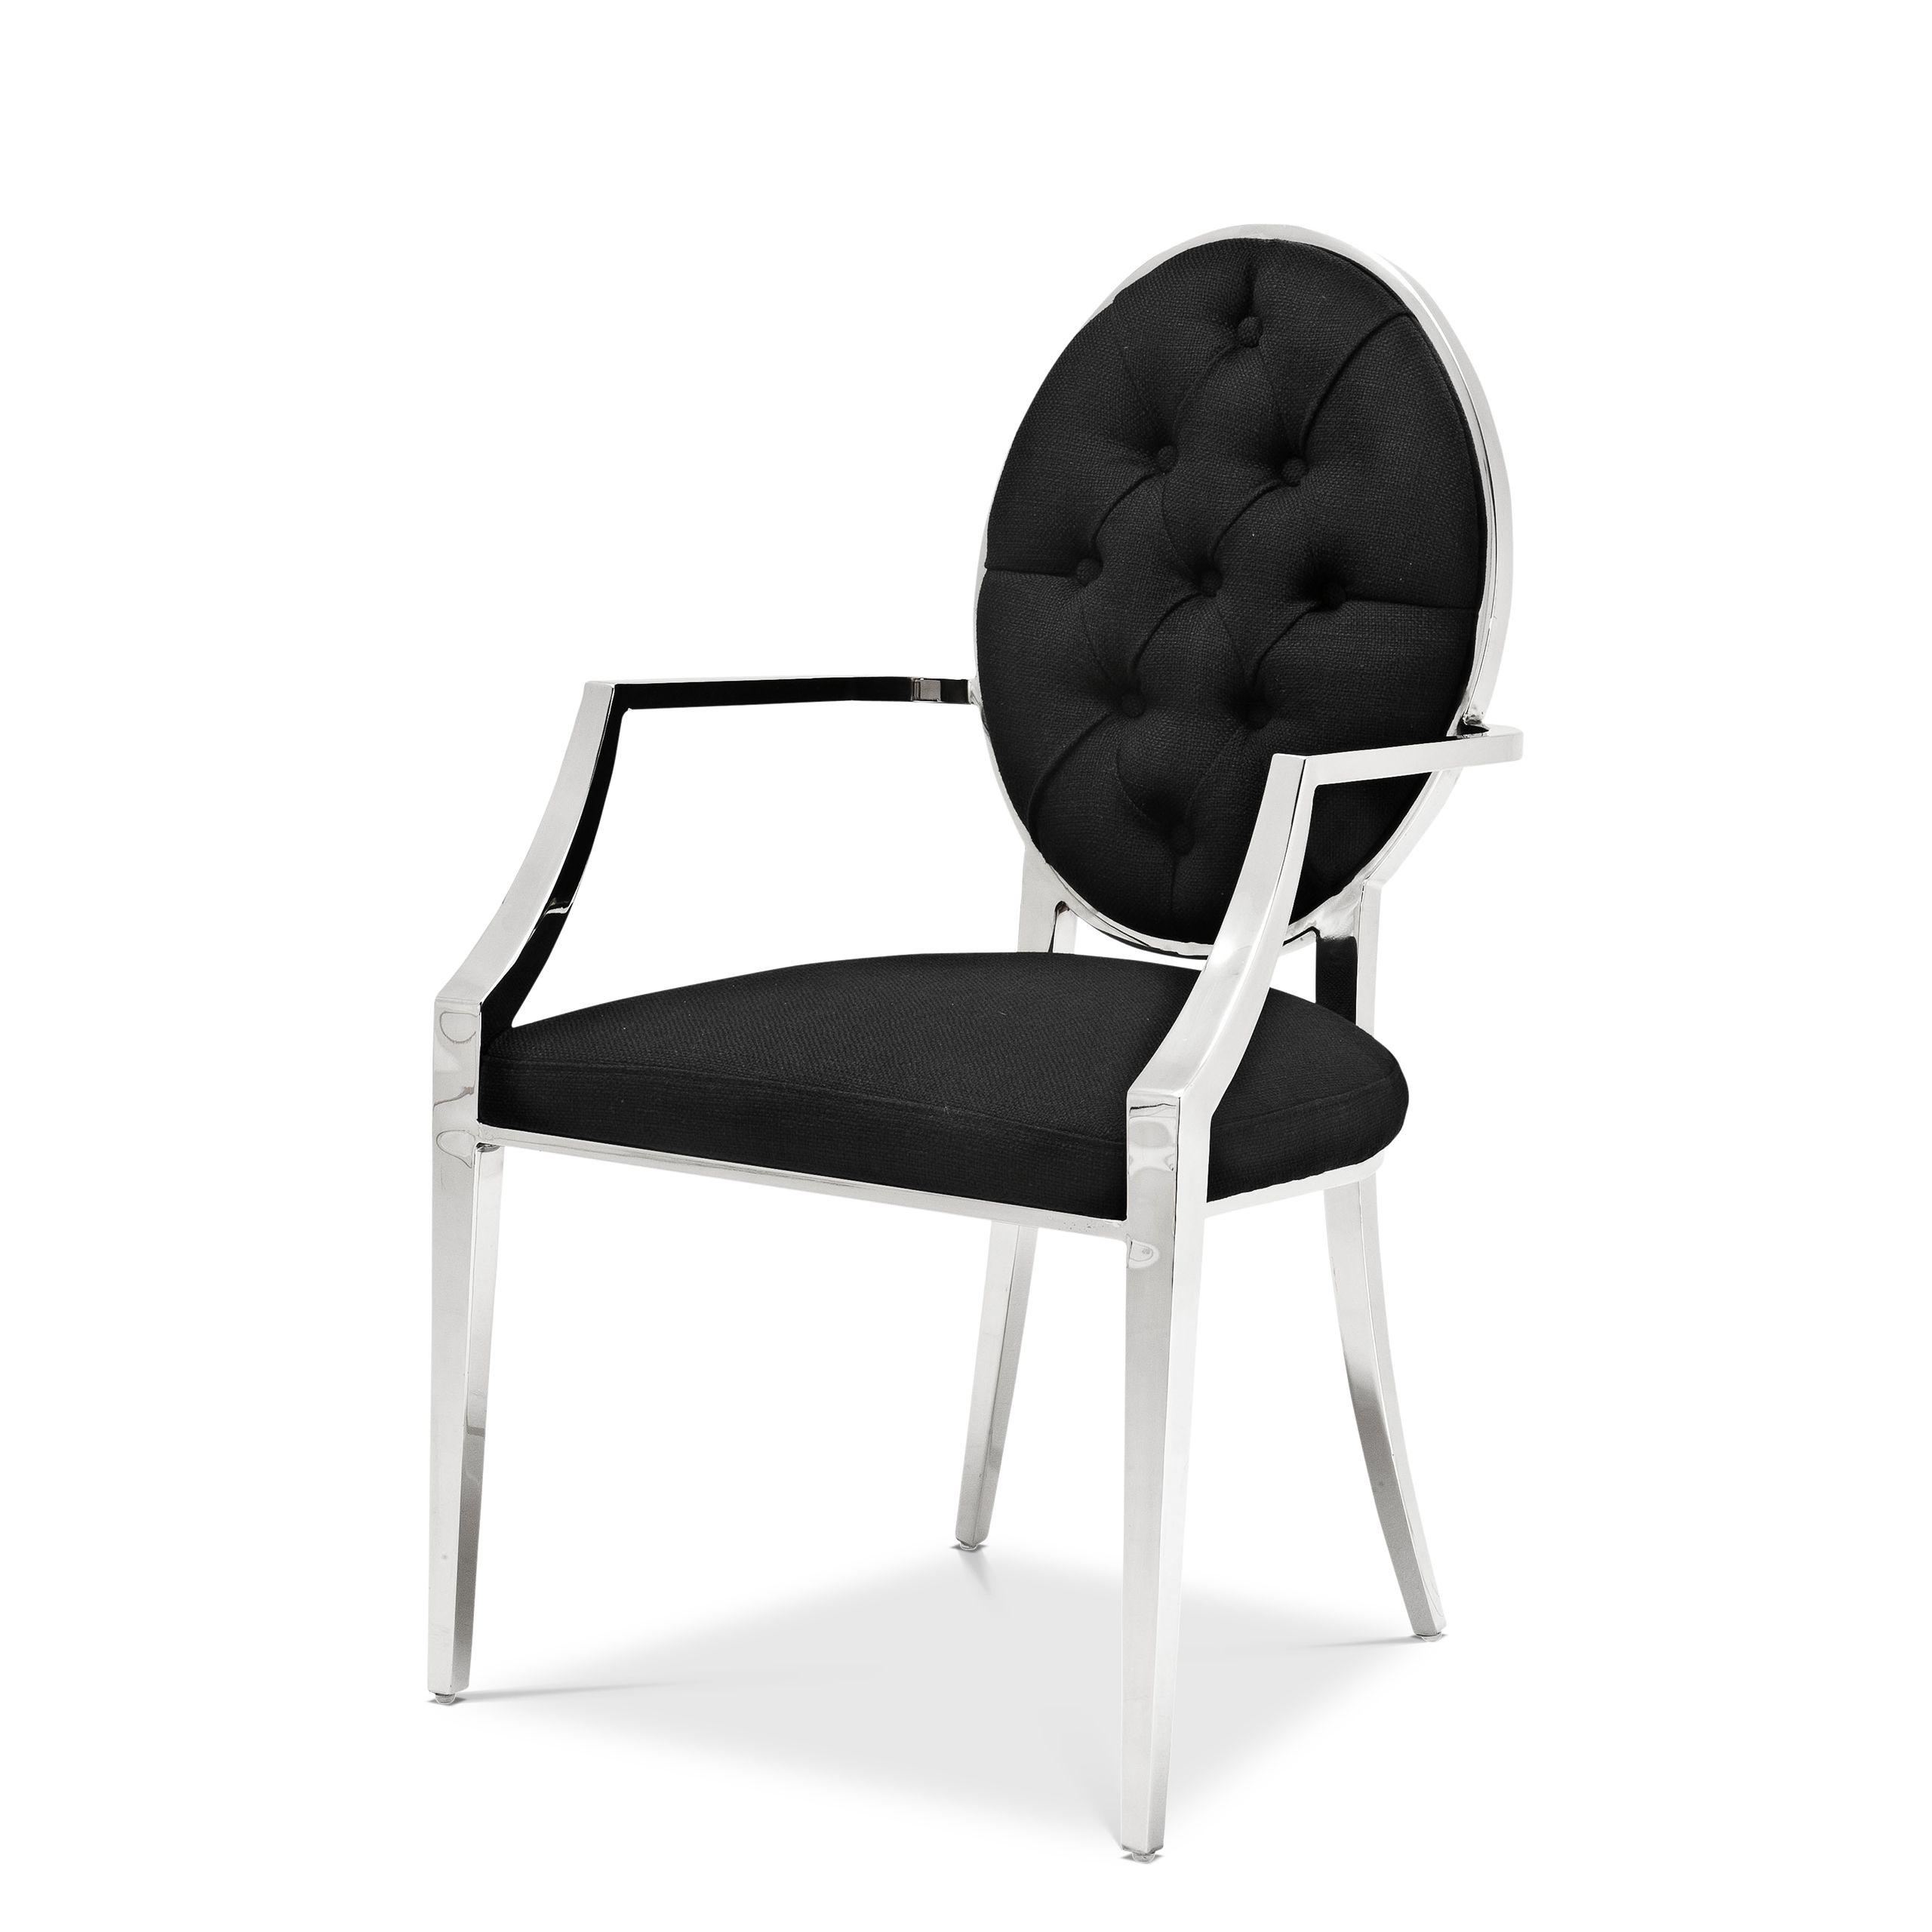 Купить Стул без подлокотника Dining Chair Tayler в интернет-магазине roooms.ru